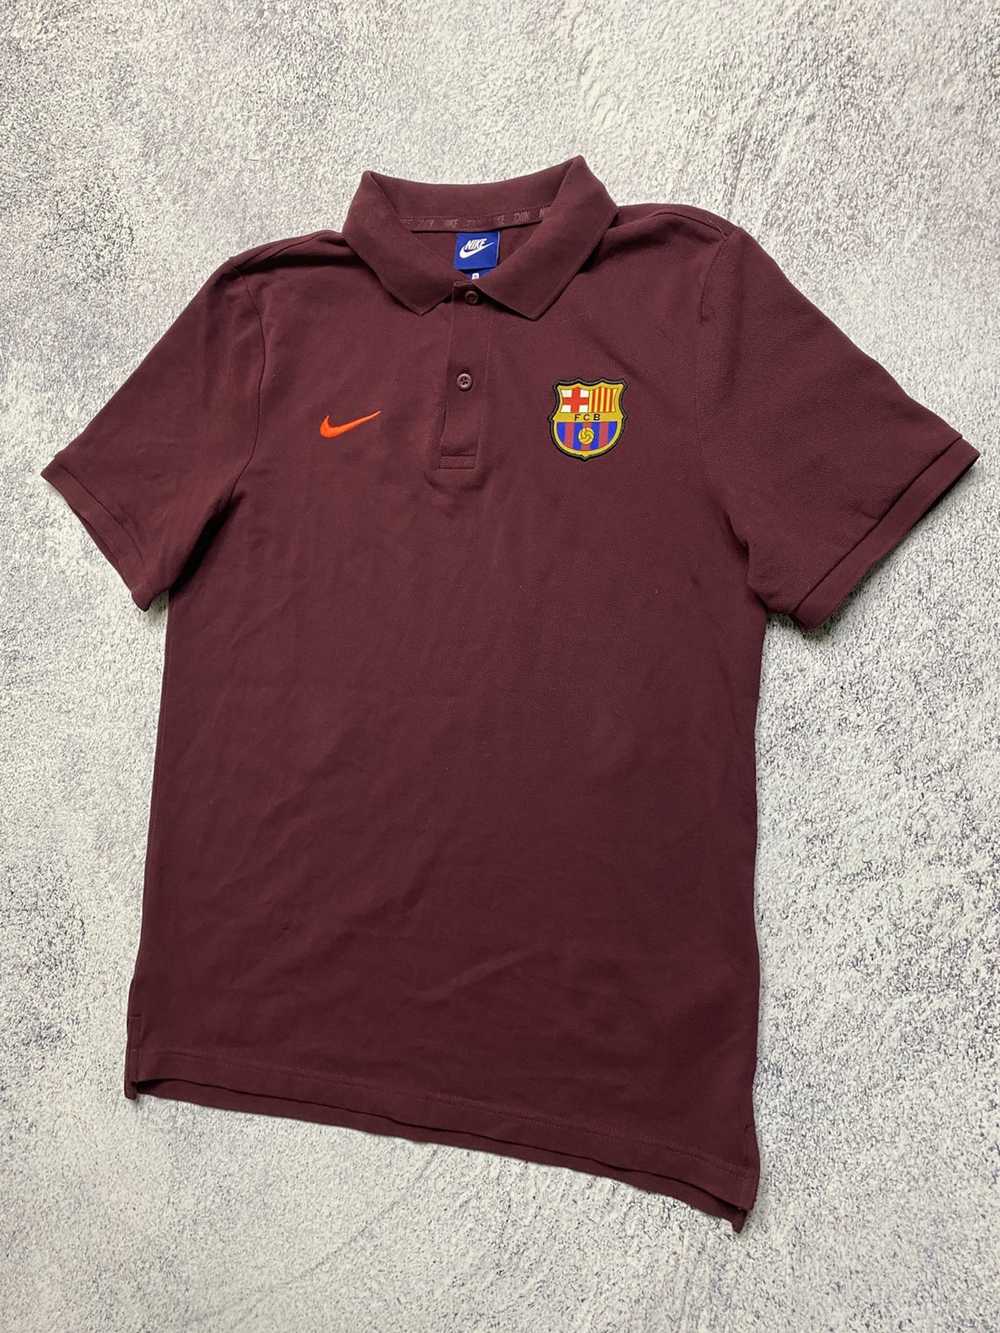 Nike × Soccer Jersey × Vintage Nike Team Barcelon… - image 2